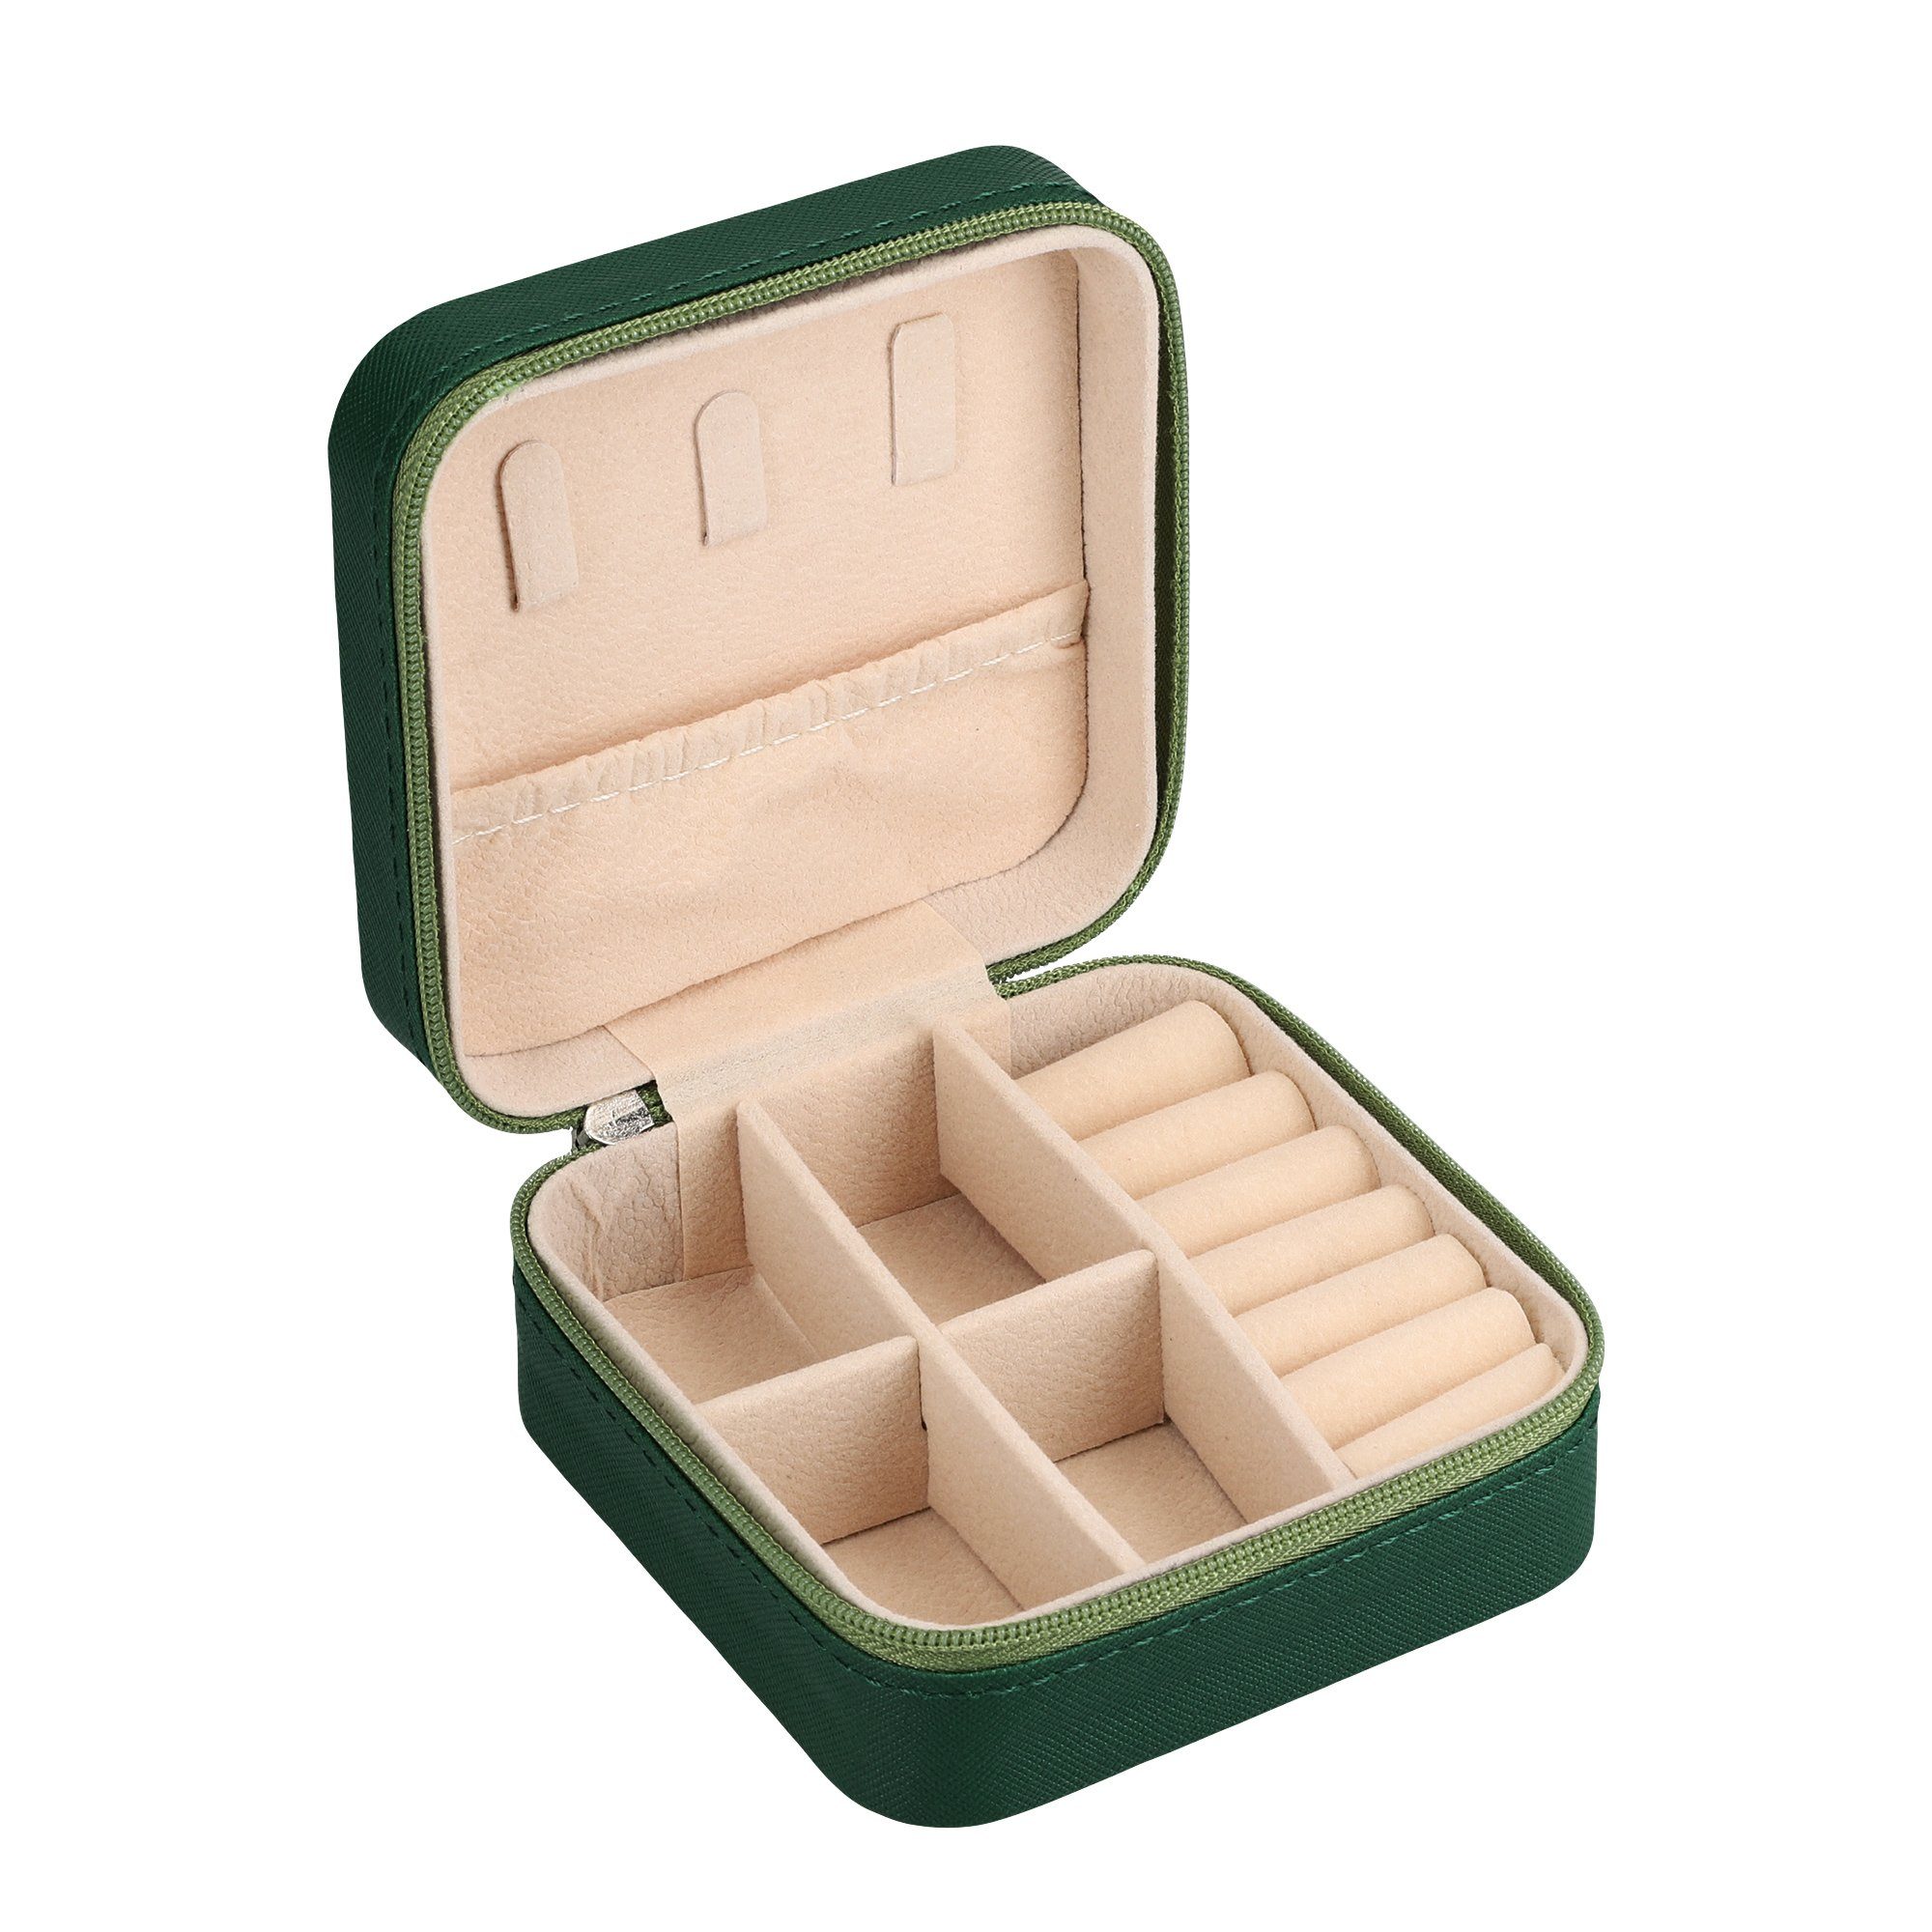 kwmobile Schmuckkasten Schmuckbox Reise - Schmuckkästchen für unterwegs - Schmucketui, Reisetasche Box - klassisches Design - kleine Schmuckaufbewahrung